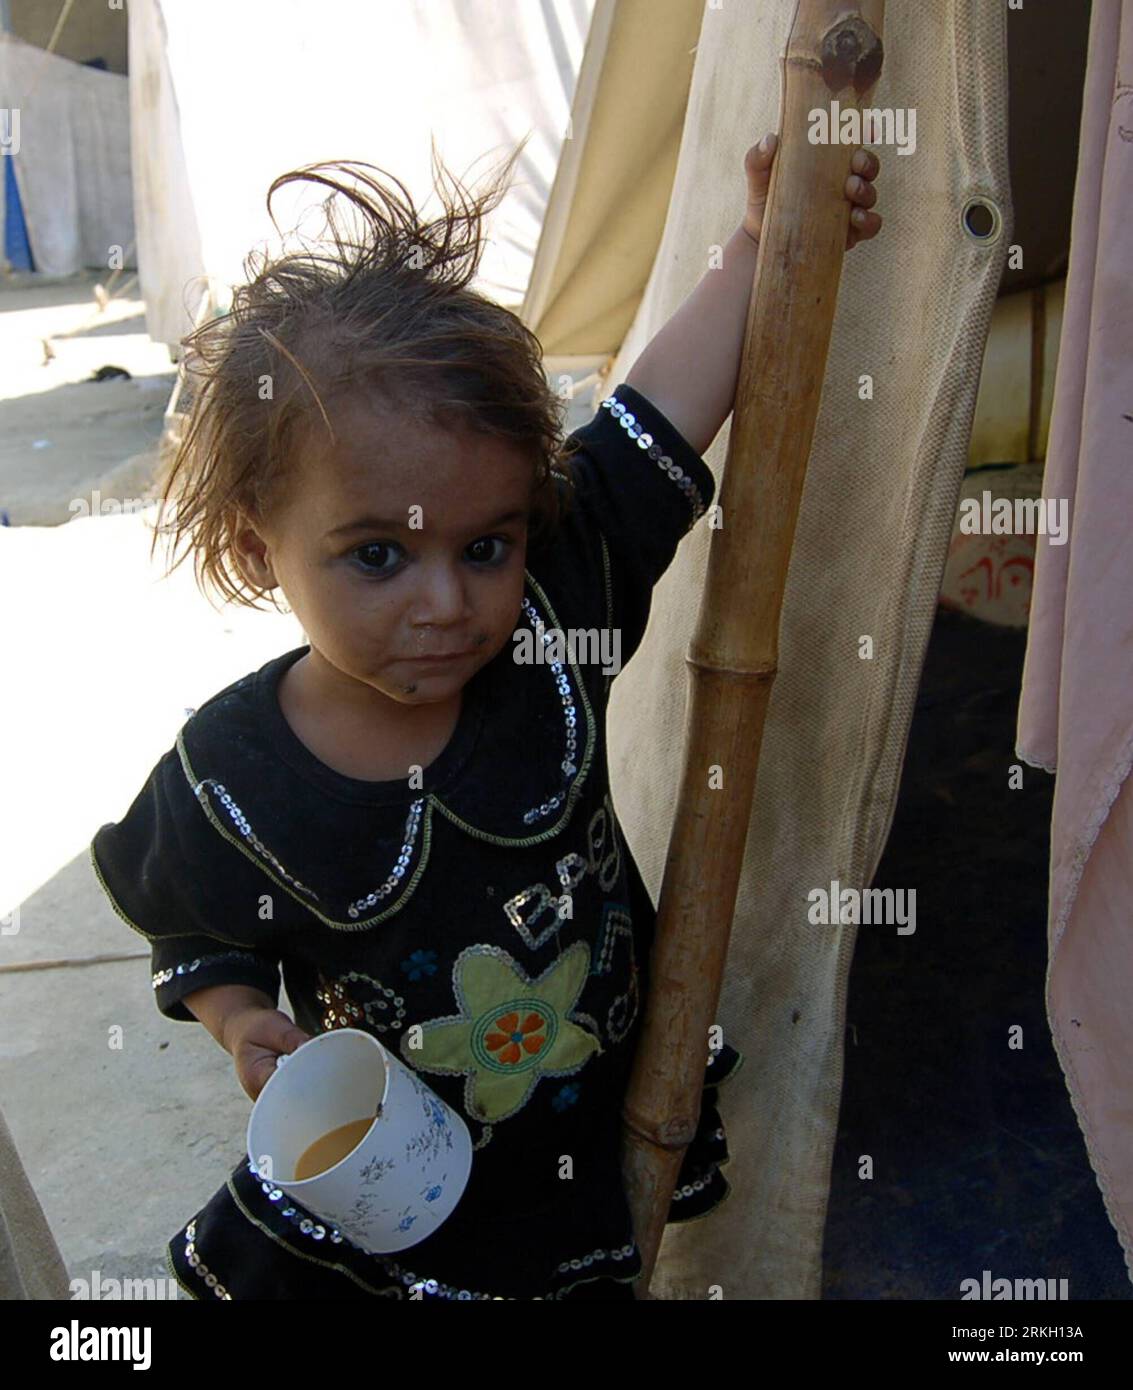 Bildnummer: 55674378 Datum: 02.08.2011 Copyright: imago/Xinhua (110802) -- CHARSADDA, 2. August 2011 (Xinhua) -- Ein Mädchen, Das vor einem Jahr von den katastrophalen Überschwemmungen vertrieben wurde, steht neben ihrem provisorischen Zelt in Charsadda, Nordwest-Pakistan am 2. August 2011. Ein Jahr nach den schlimmsten sintflutartigen Überschwemmungen kämpfen die gefährdeten Bevölkerungsgruppen in Pakistan immer noch darum, ihr Leben wieder aufzubauen und sich von den Folgen der Katastrophe zu erholen. Die Überschwemmungen in Pakistan 2010 betrafen 20 Millionen Menschen und ließen etwa 2.000 Tote zurück. (Xinhua Photo/Saeed Ahmad)(WN) PAKISTAN-CHARSADDA-FLUDHOLY-DAILY LIFE PUBLICATIONxNOTxINxCHN Gese Stockfoto